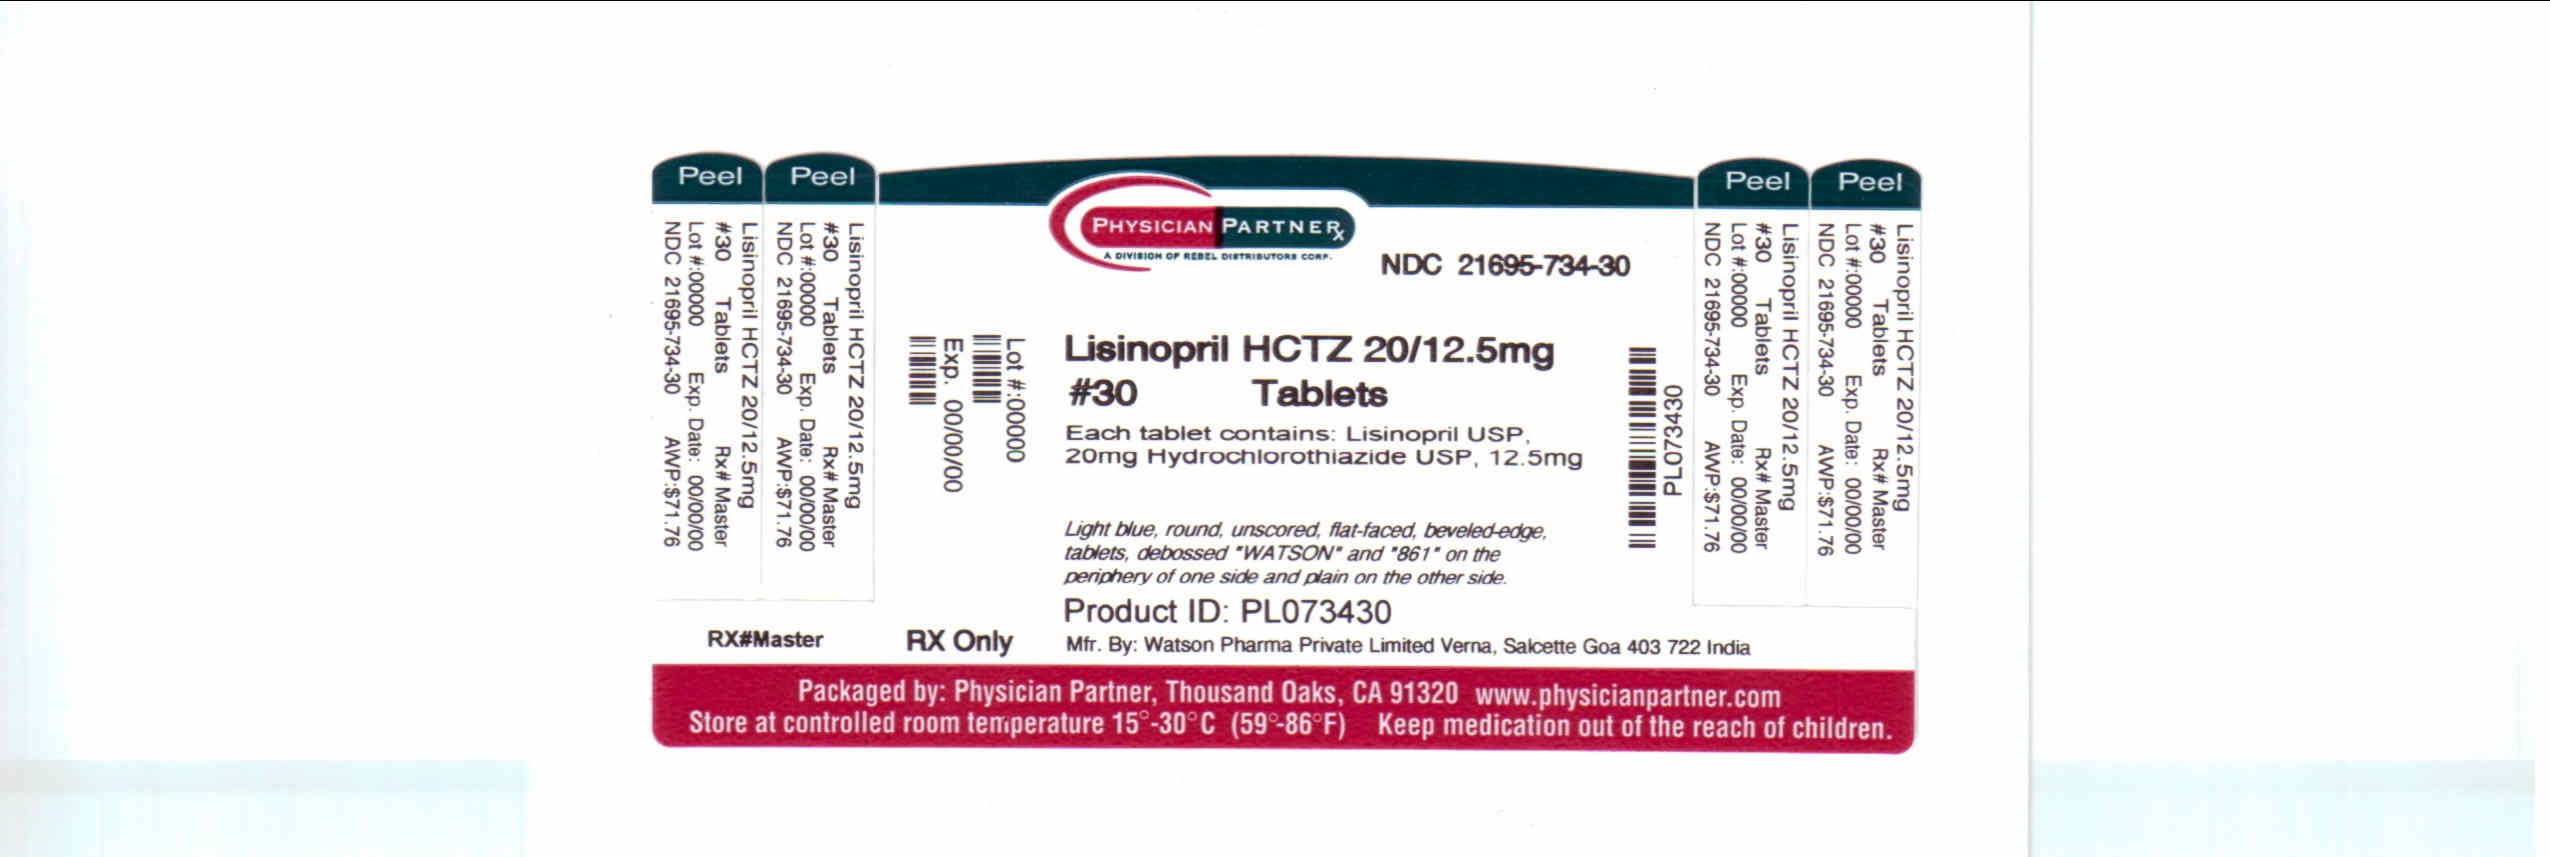 Lisinopril and hydrochlorothiazide